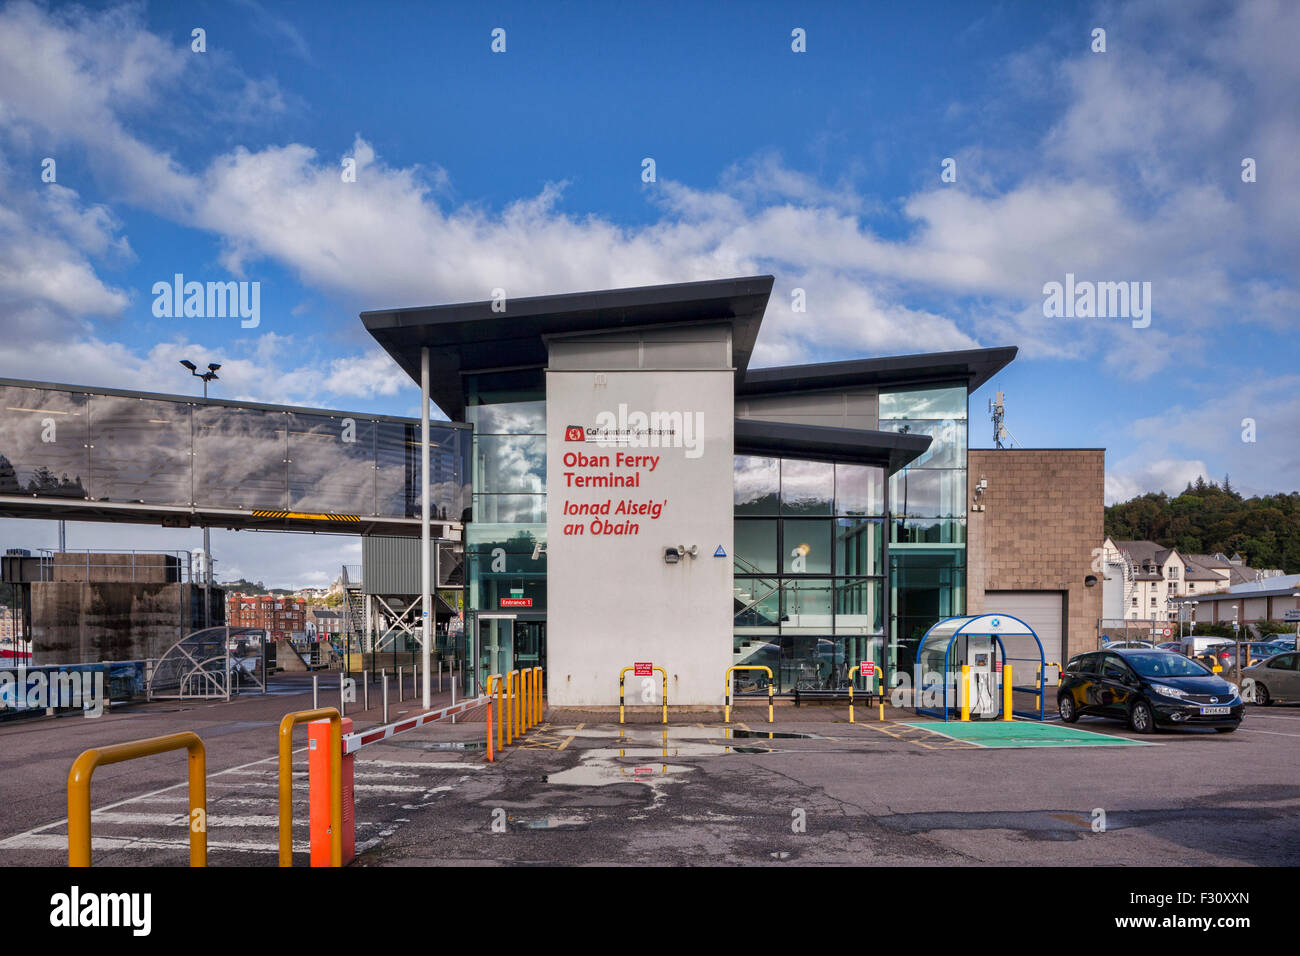 Oban Ferry Terminal, Argyll and Bute, Scotland, UK. Stock Photo